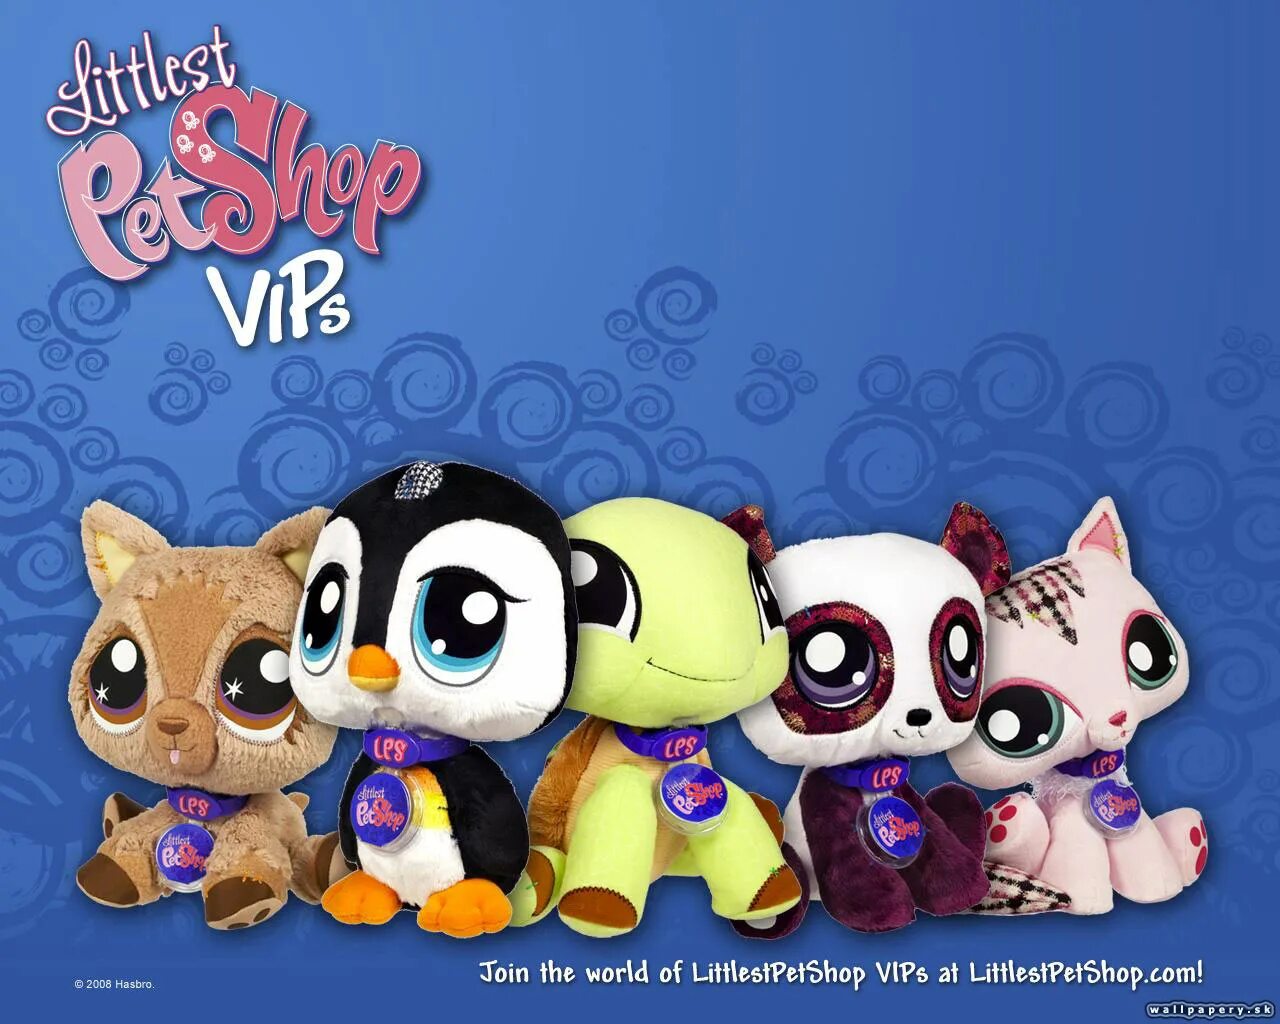 Little is Pet shop игра. My Littlest Pet shop игра. Littlest Pet shop 2010. Littlest Pet shop 2011. Pet shop video